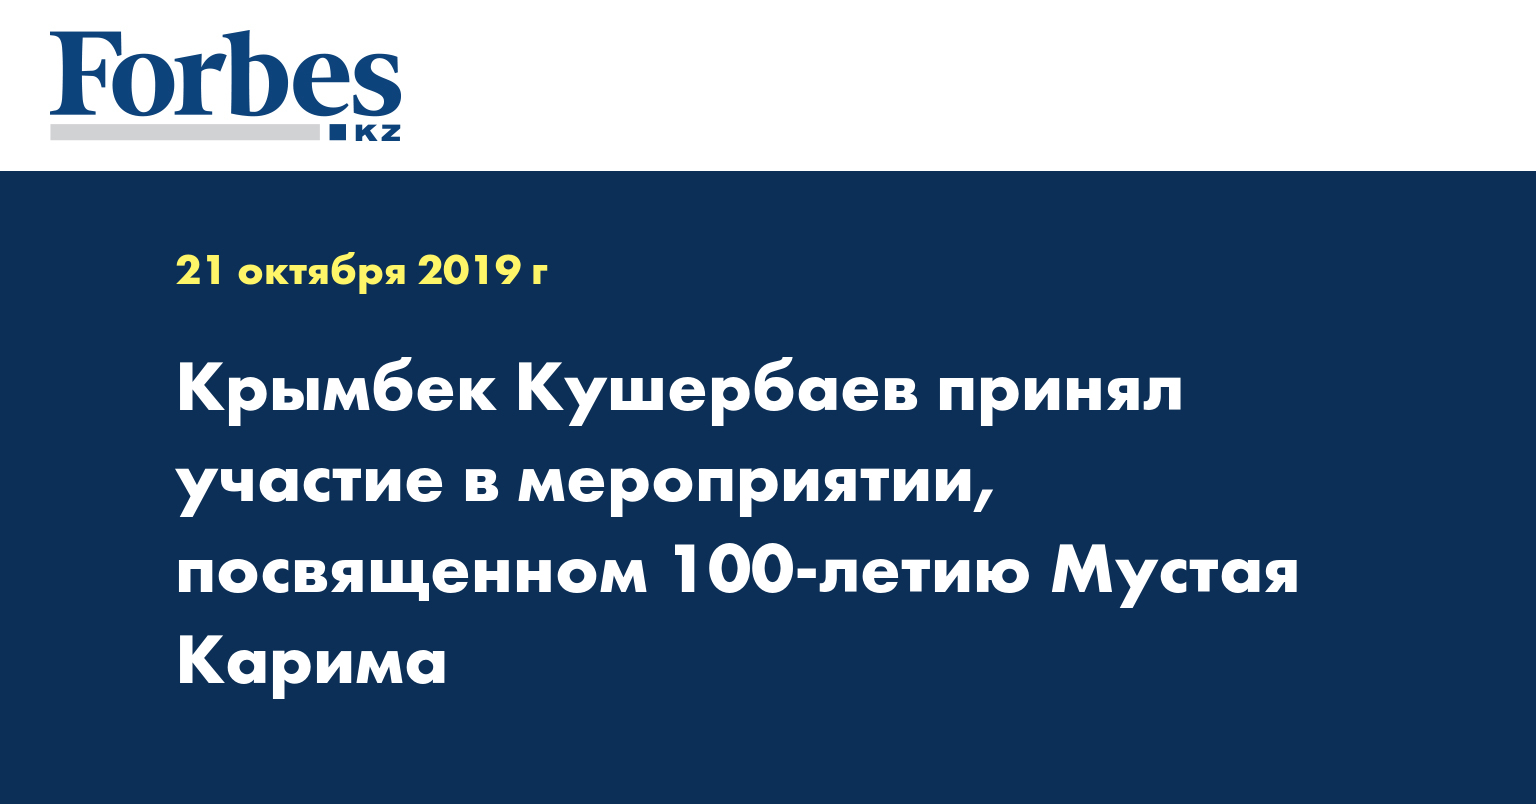 Крымбек Кушербаев принял участие в мероприятии, посвященном 100-летию Мустая Карима